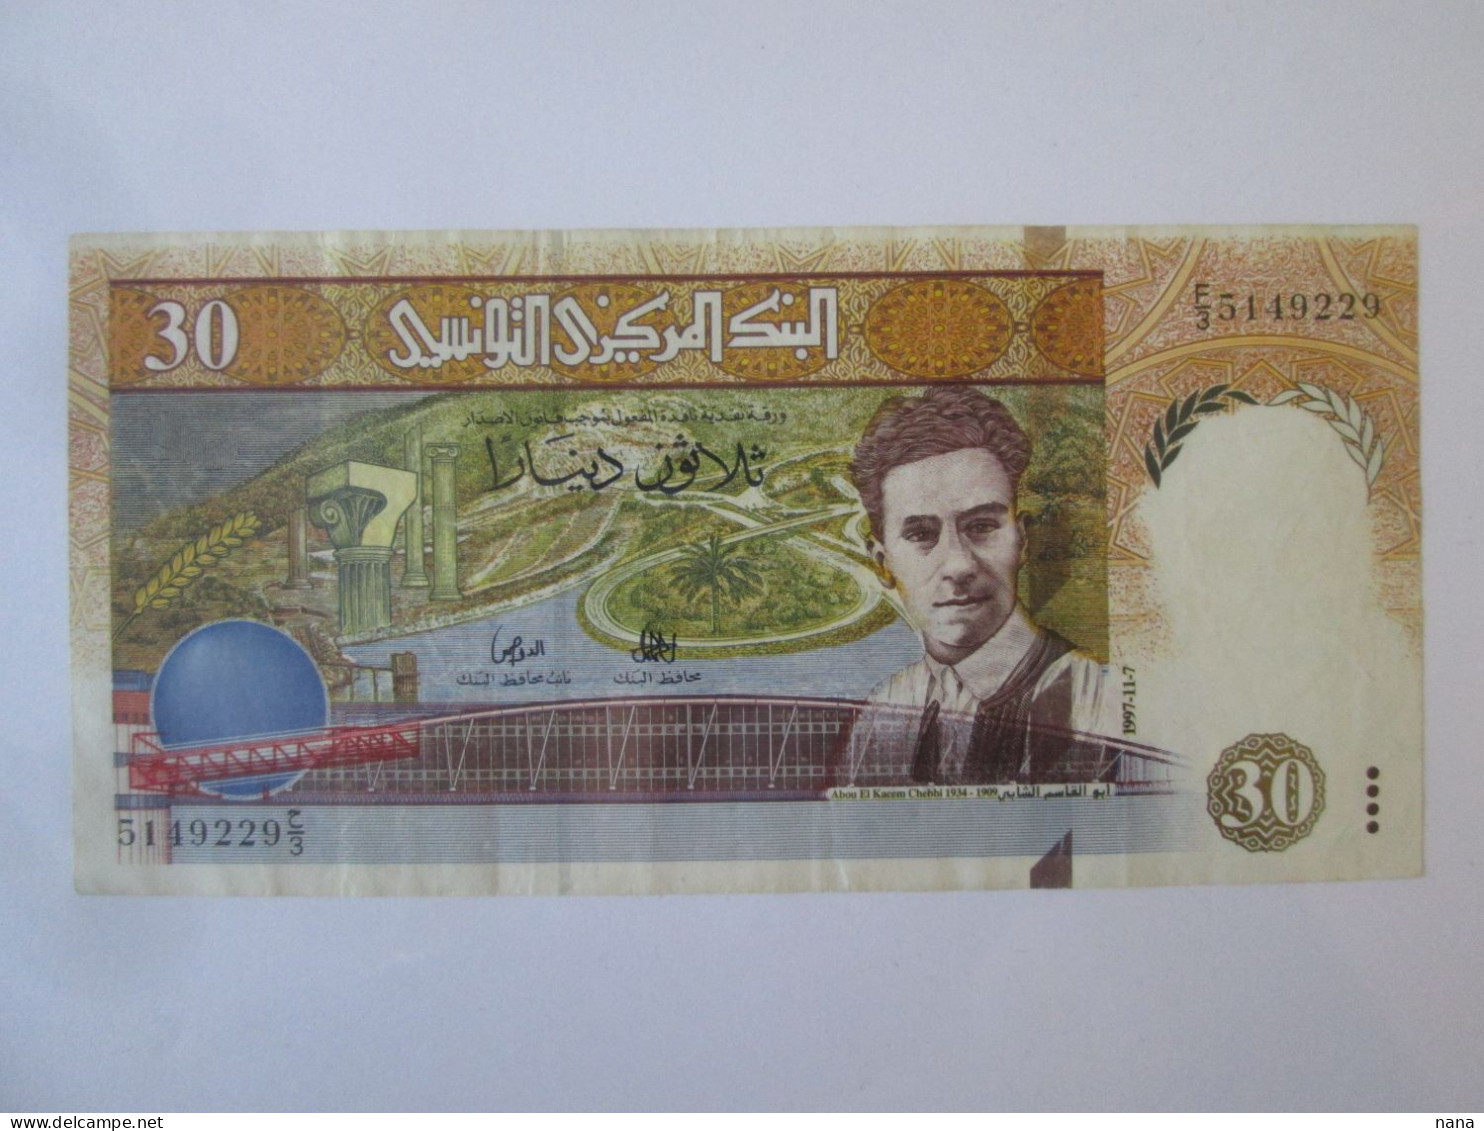 Tunisia/Tunisie 30 Dinars 1997 Banknote AUNC See Pictures - Tunisie